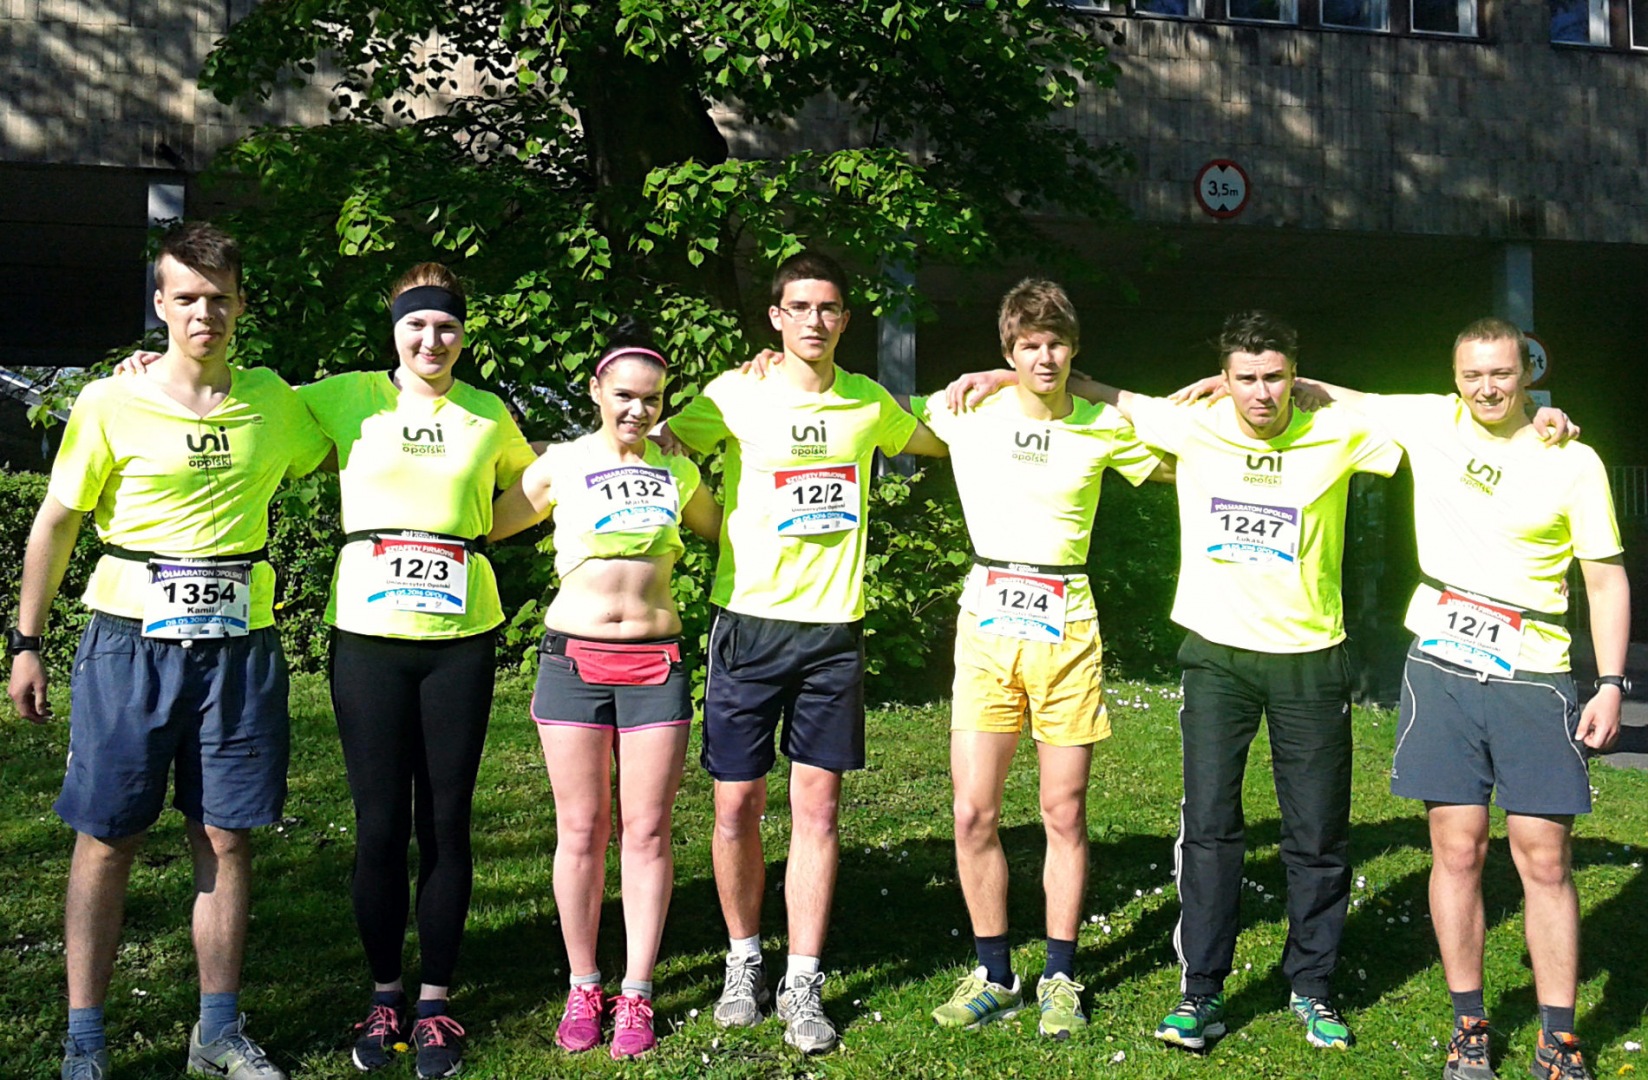 Reprezentanci UO podczas Maratonu Opolskiego. W sztafecie nasi studenci zajęli wysokie 6. miejsce